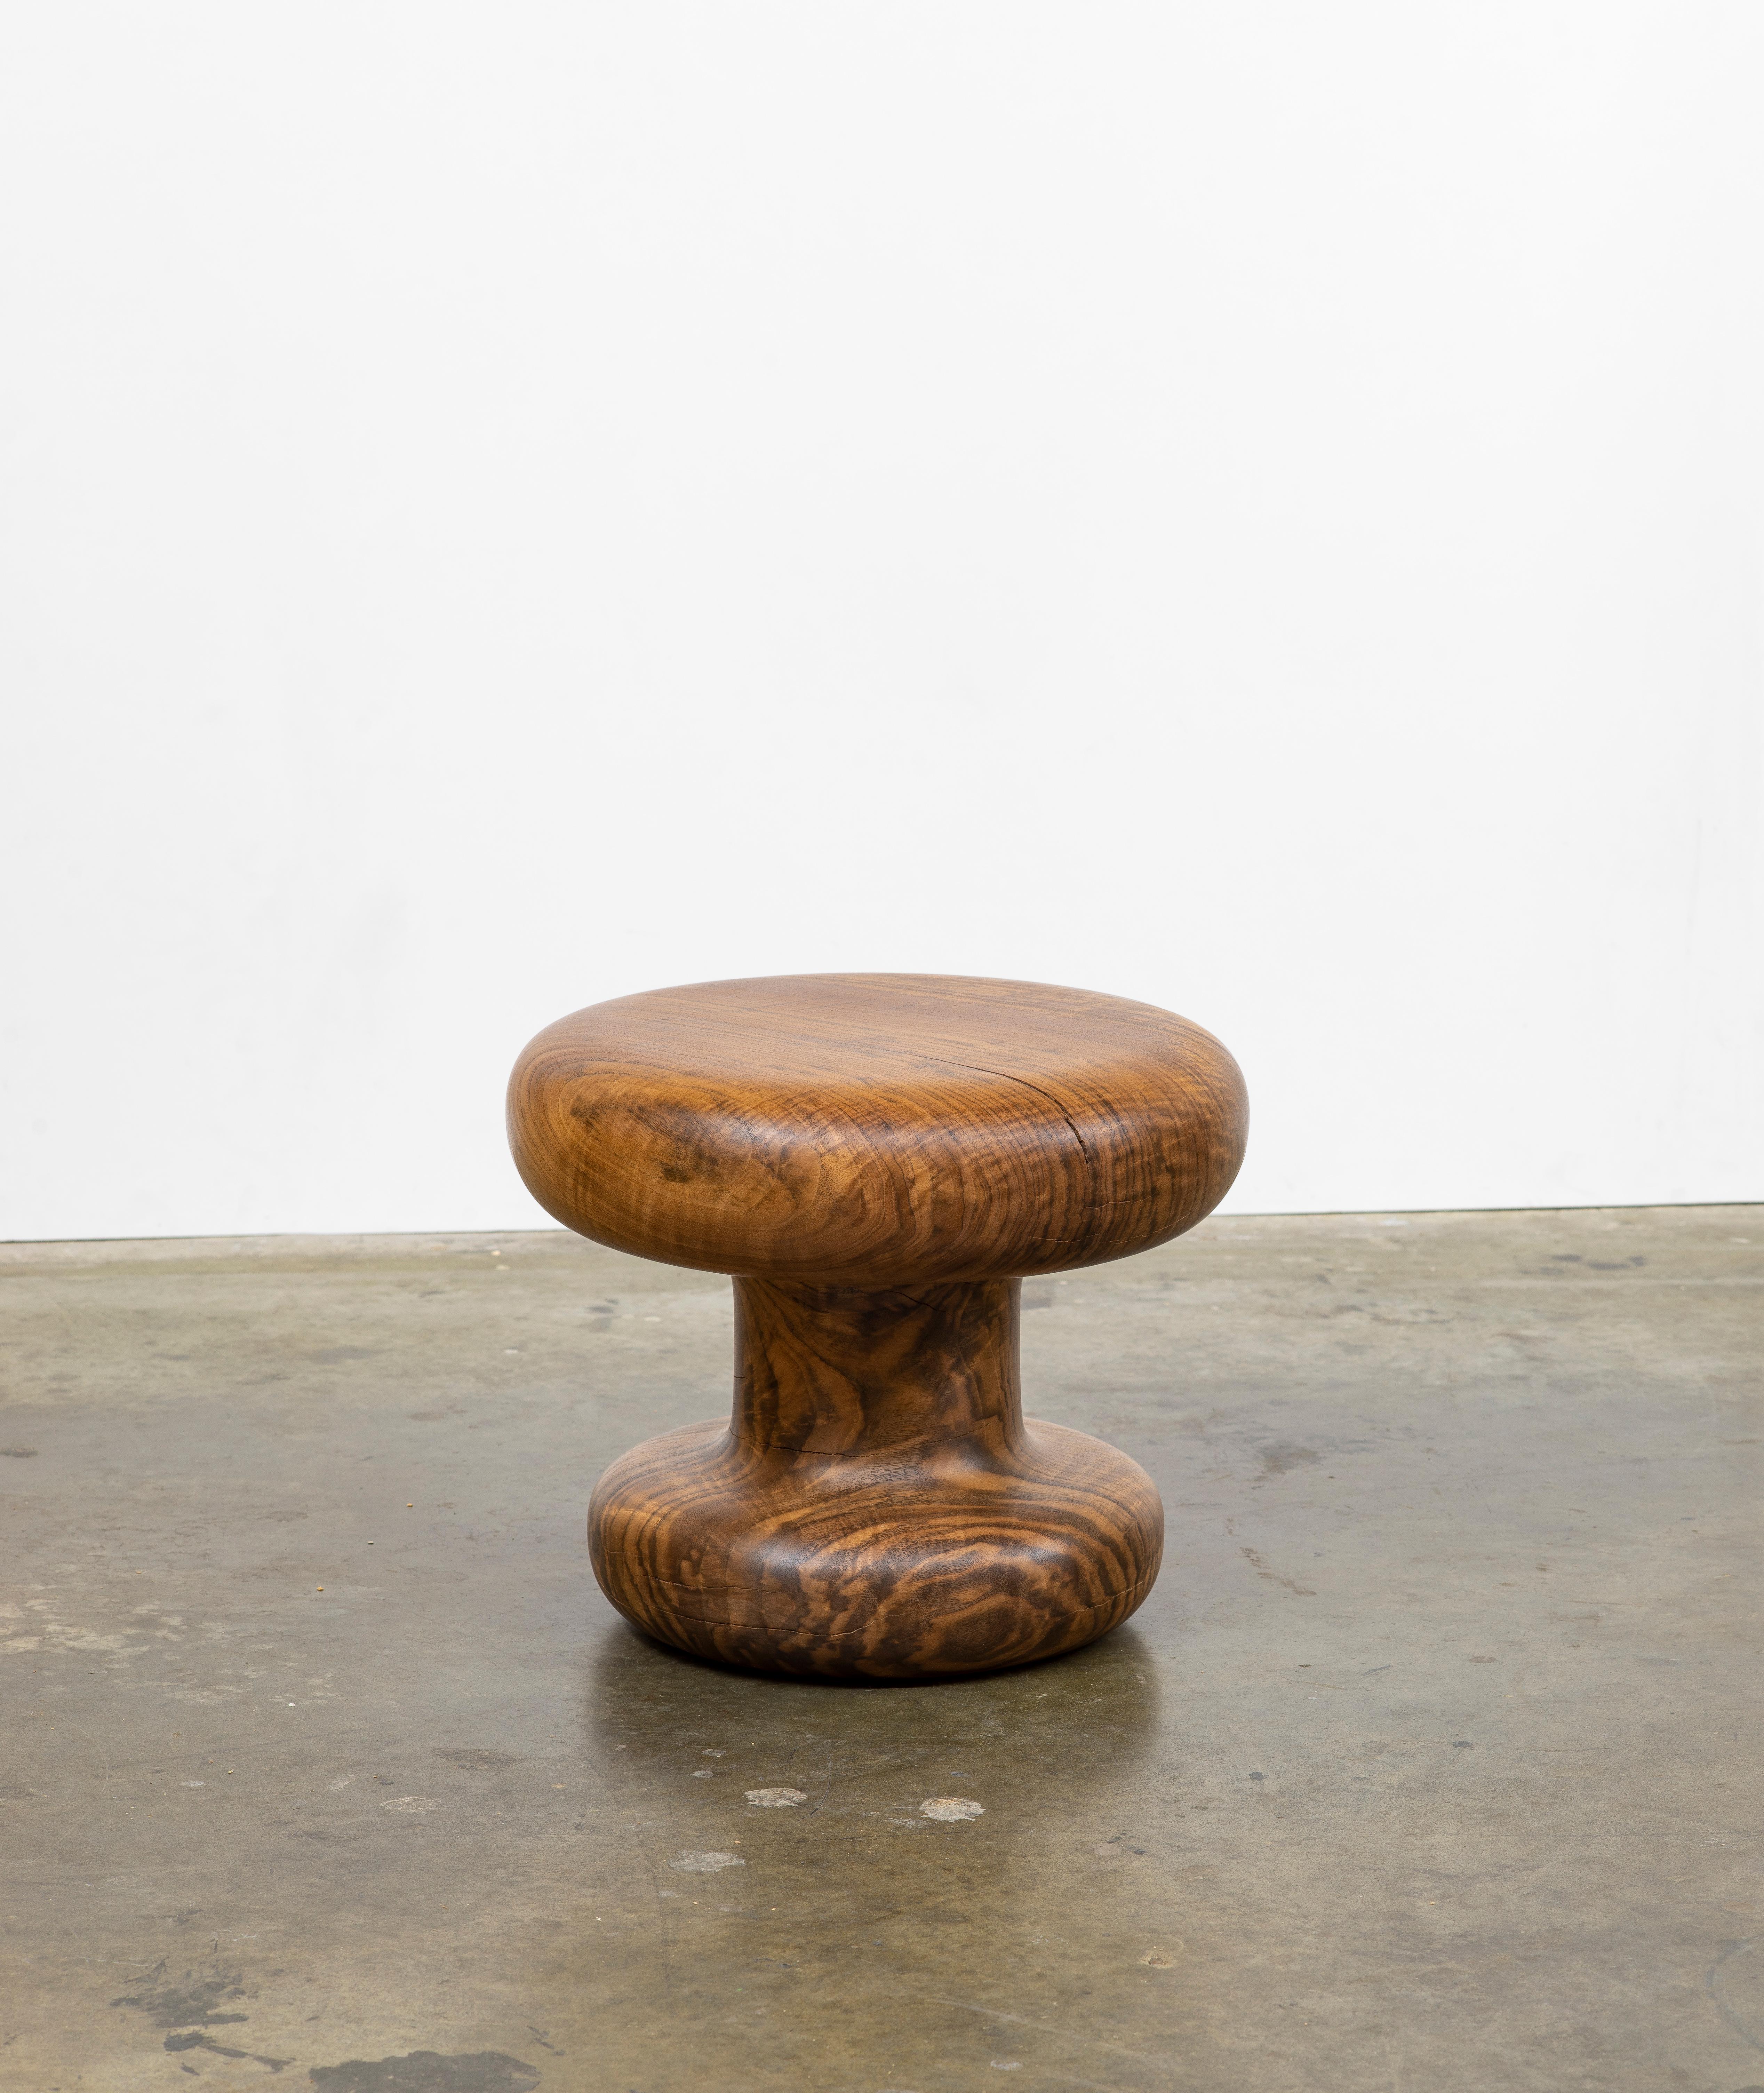 Le travail de l'artiste Christopher Norman, basé à Los Angeles, explore les caractéristiques des formes moulées exécutées dans des bois exceptionnels. Dans n'importe quel contexte, ils appellent à être utilisés et appréciés. Chaque article est une